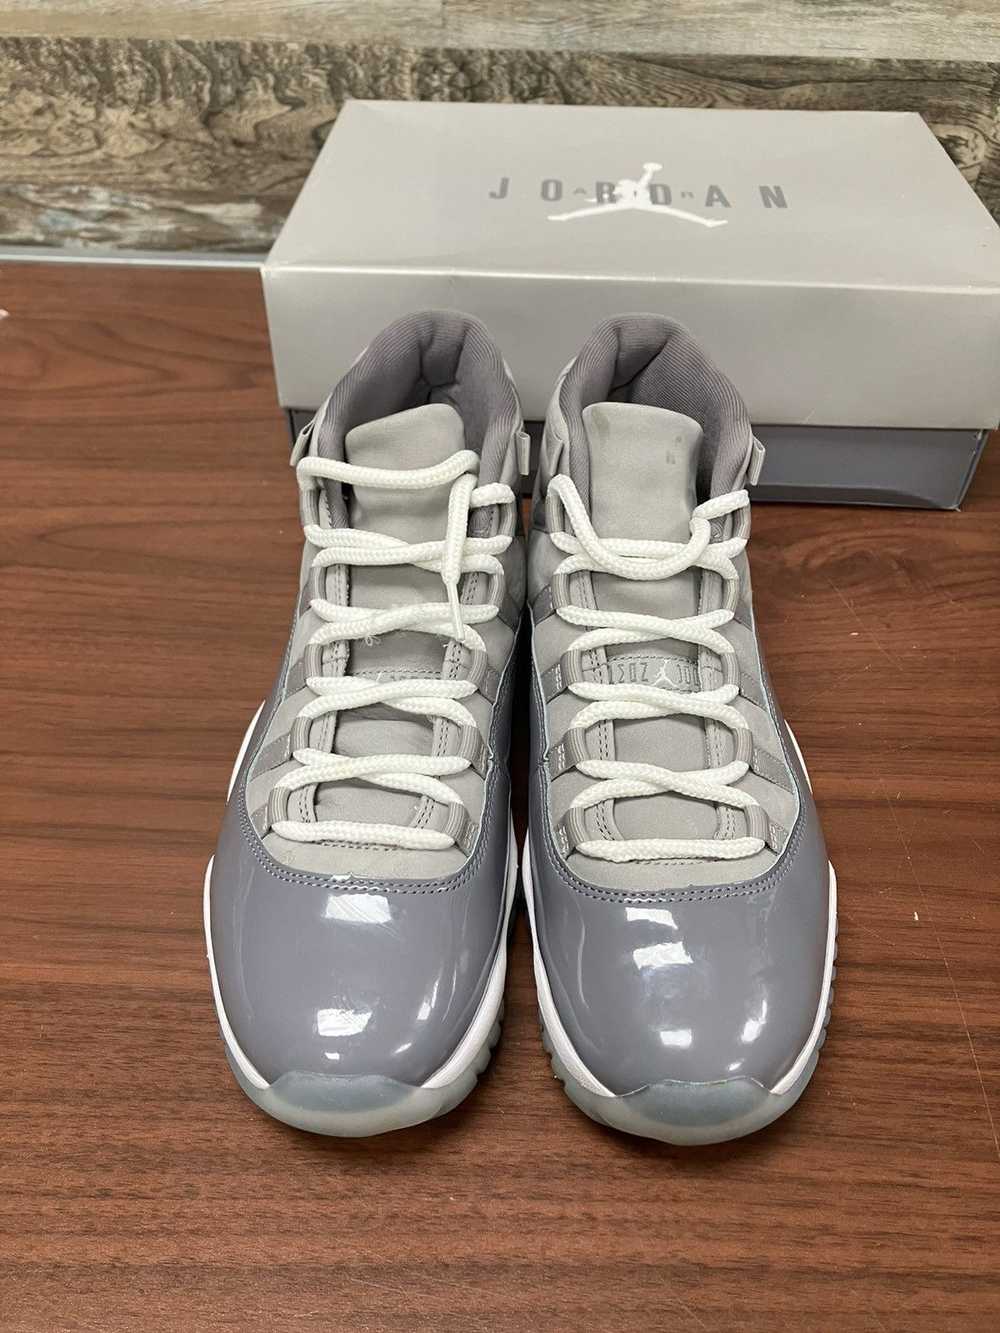 Jordan Brand Air Jordan 11 Cool Grey Size 9.5 - image 3